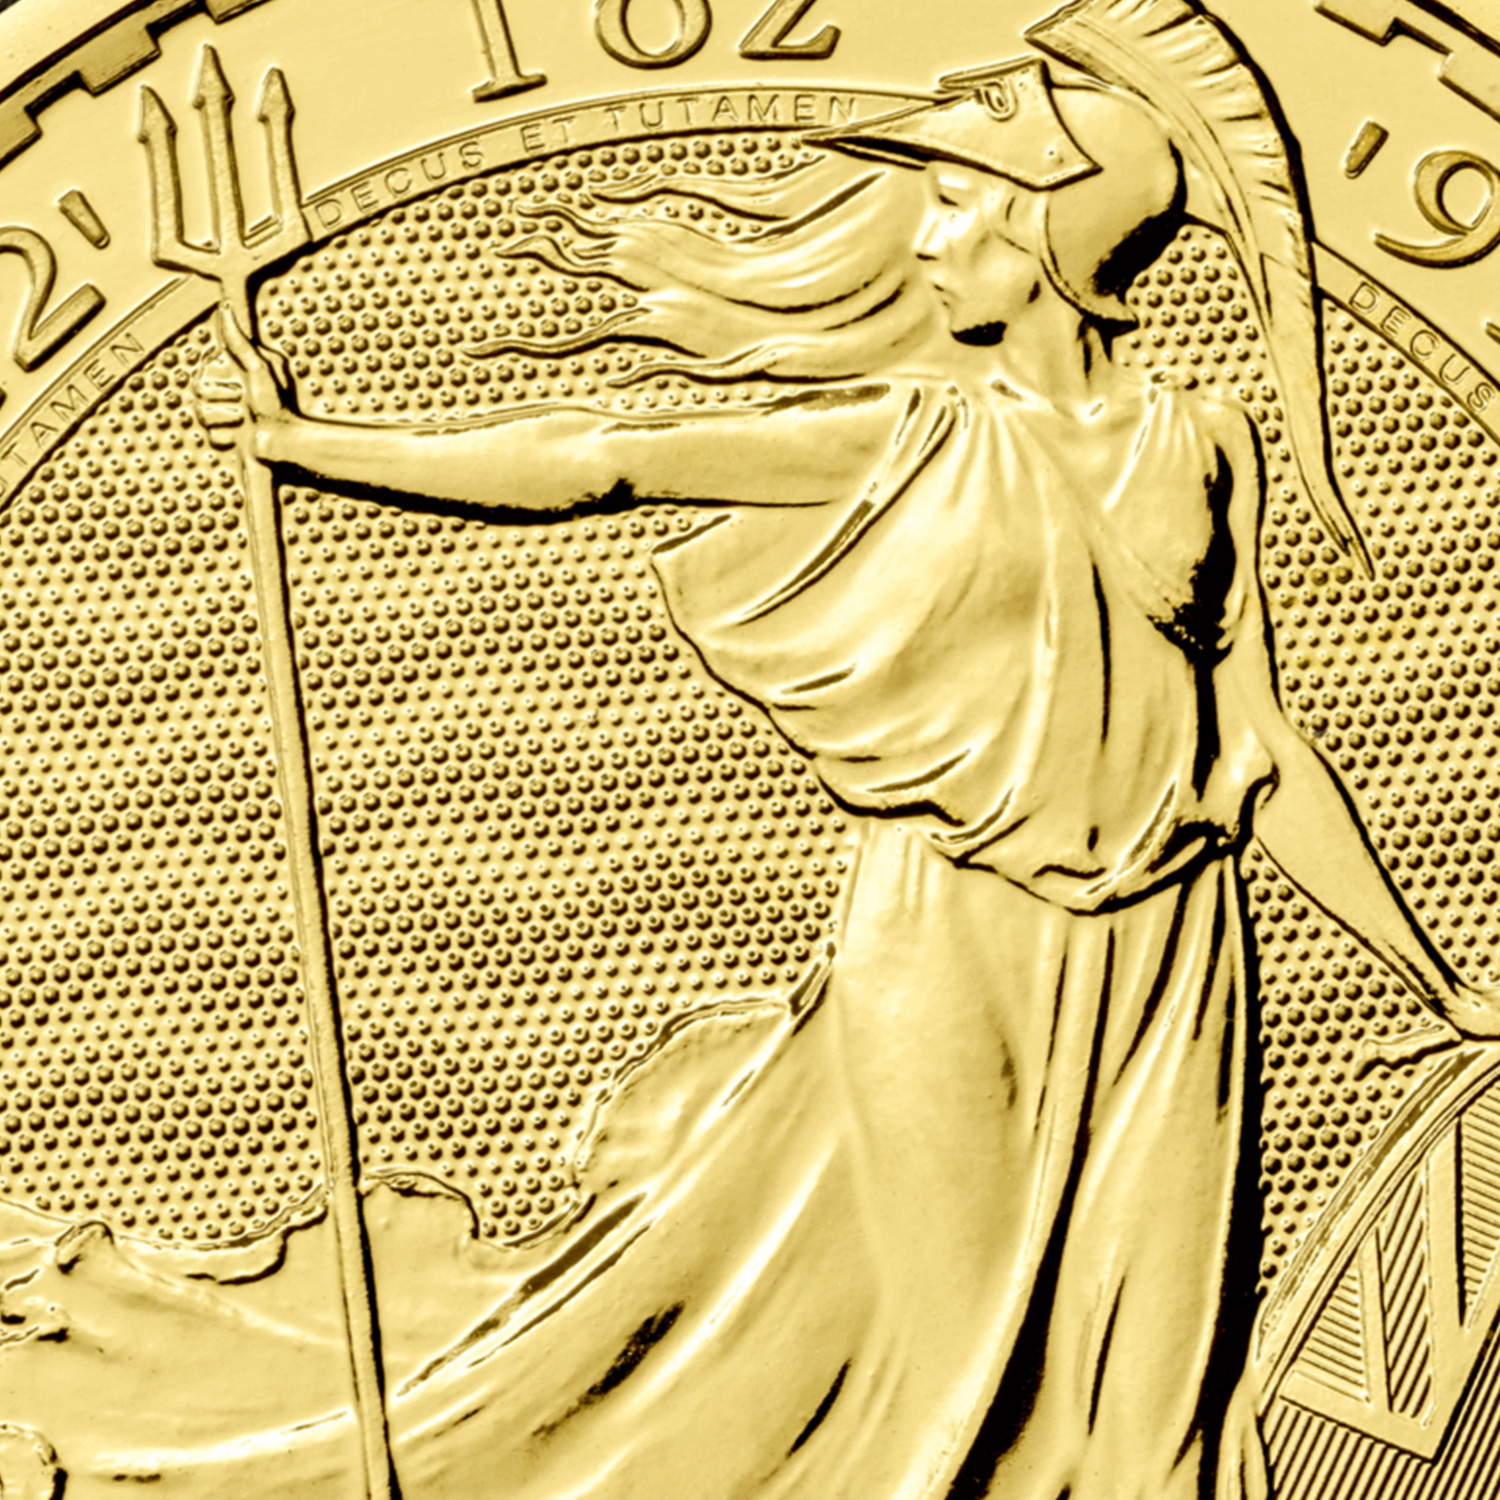 2022 britannia gold coin detail